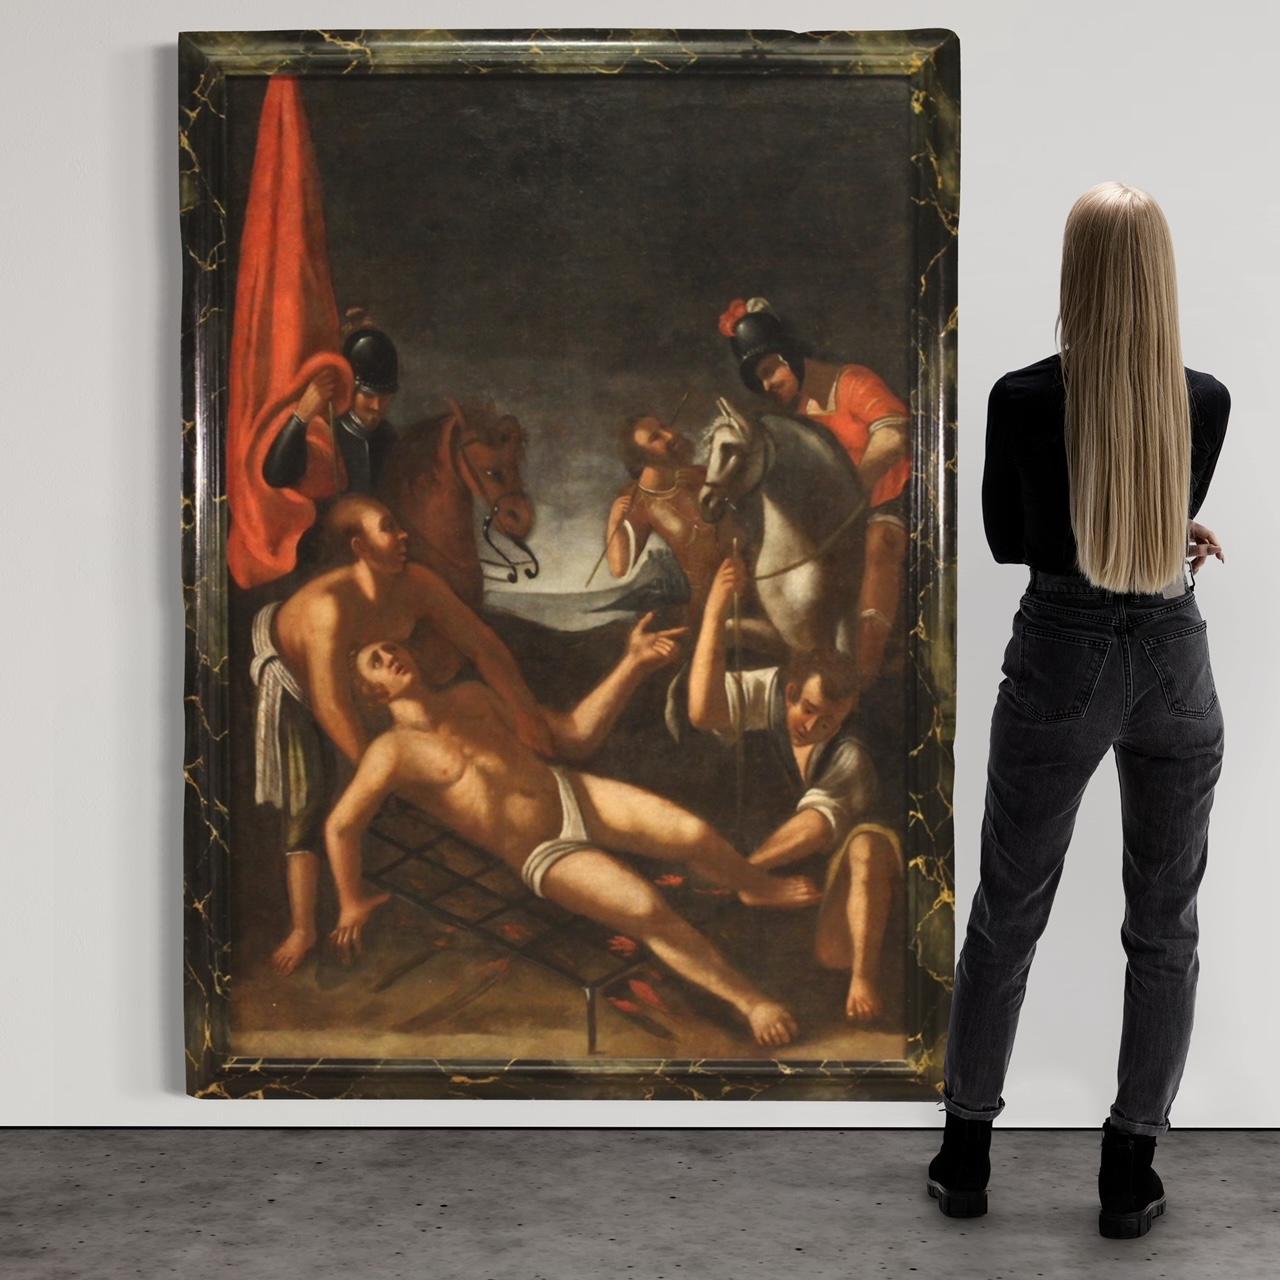 Großes italienisches Gemälde aus der ersten Hälfte des 18. Jahrhunderts. Ölgemälde auf Leinwand, das ein religiöses Thema, das Martyrium des Heiligen Laurentius, von guter malerischer Qualität darstellt. Altarbild von außergewöhnlicher Größe und